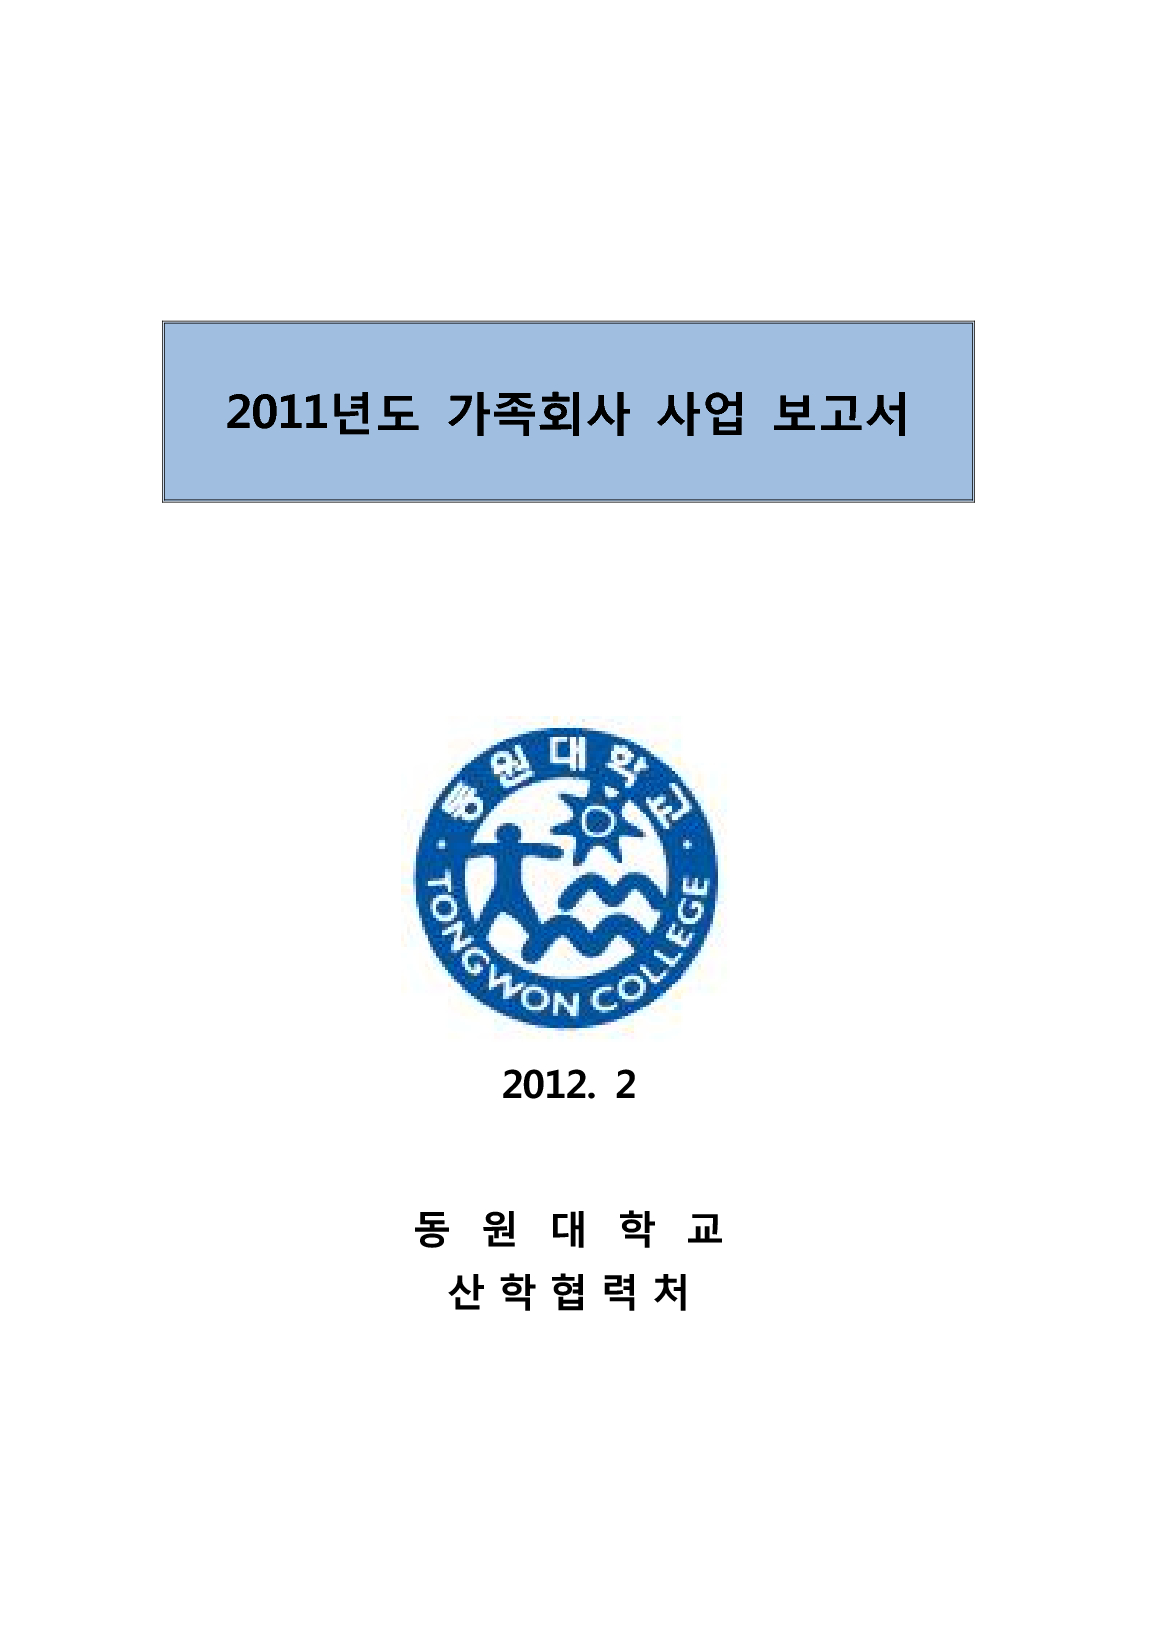 2011년도 가족회사 사업 보고서